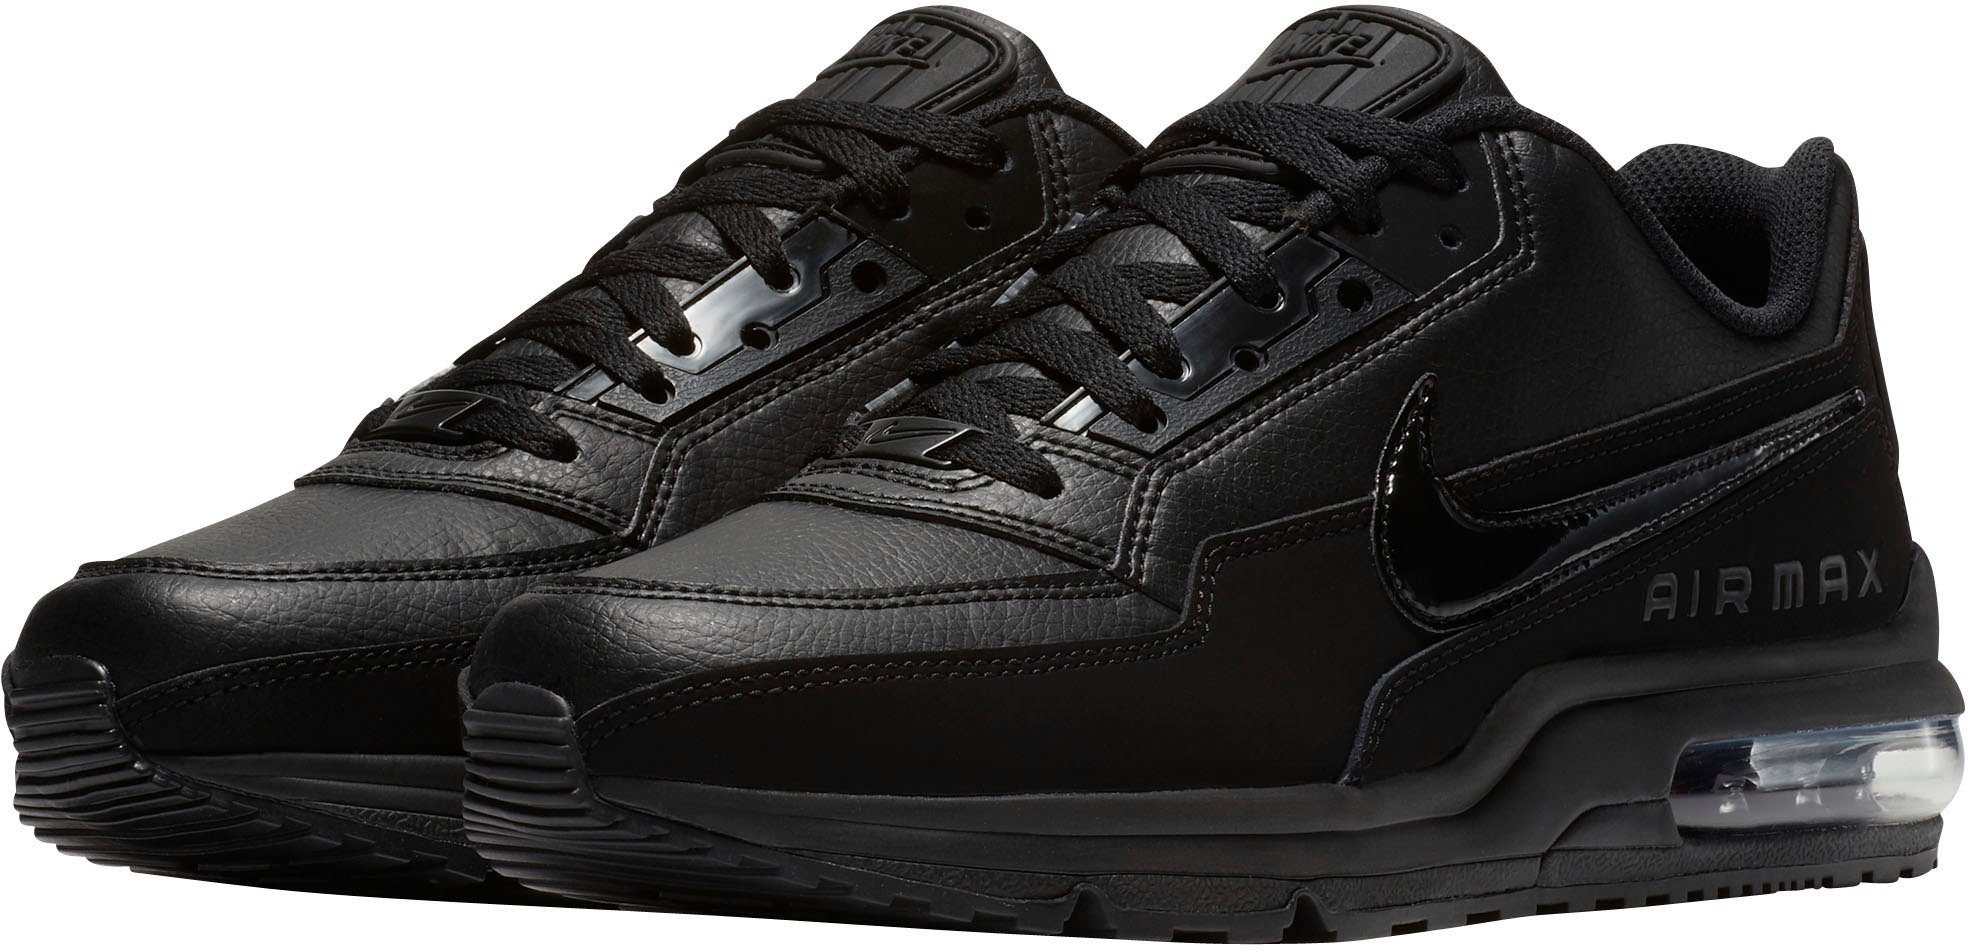 Schwarze Herren-Schuhe online kaufen | OTTO